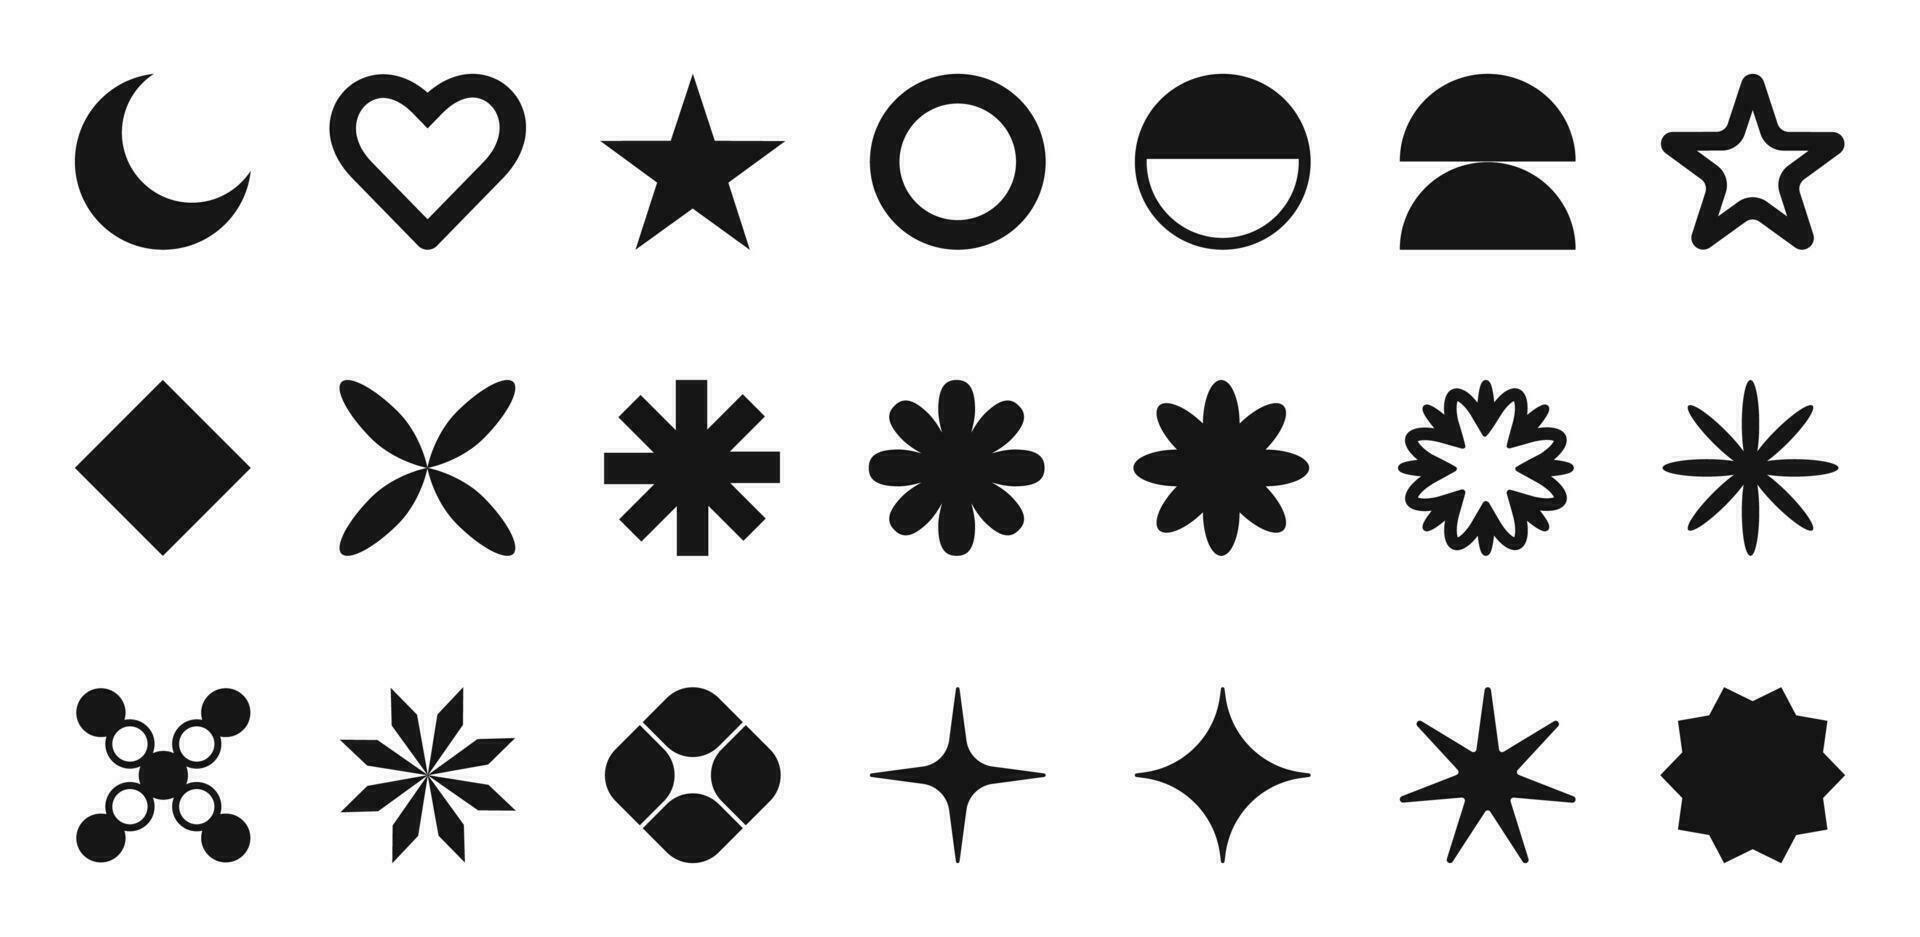 geométrico formas y negro brutalismo cifras. moderno de moda minimalista básico formularios, luna, corazón, parpadea, círculos y resumen cifras, geométrico diseño, vector colocar.